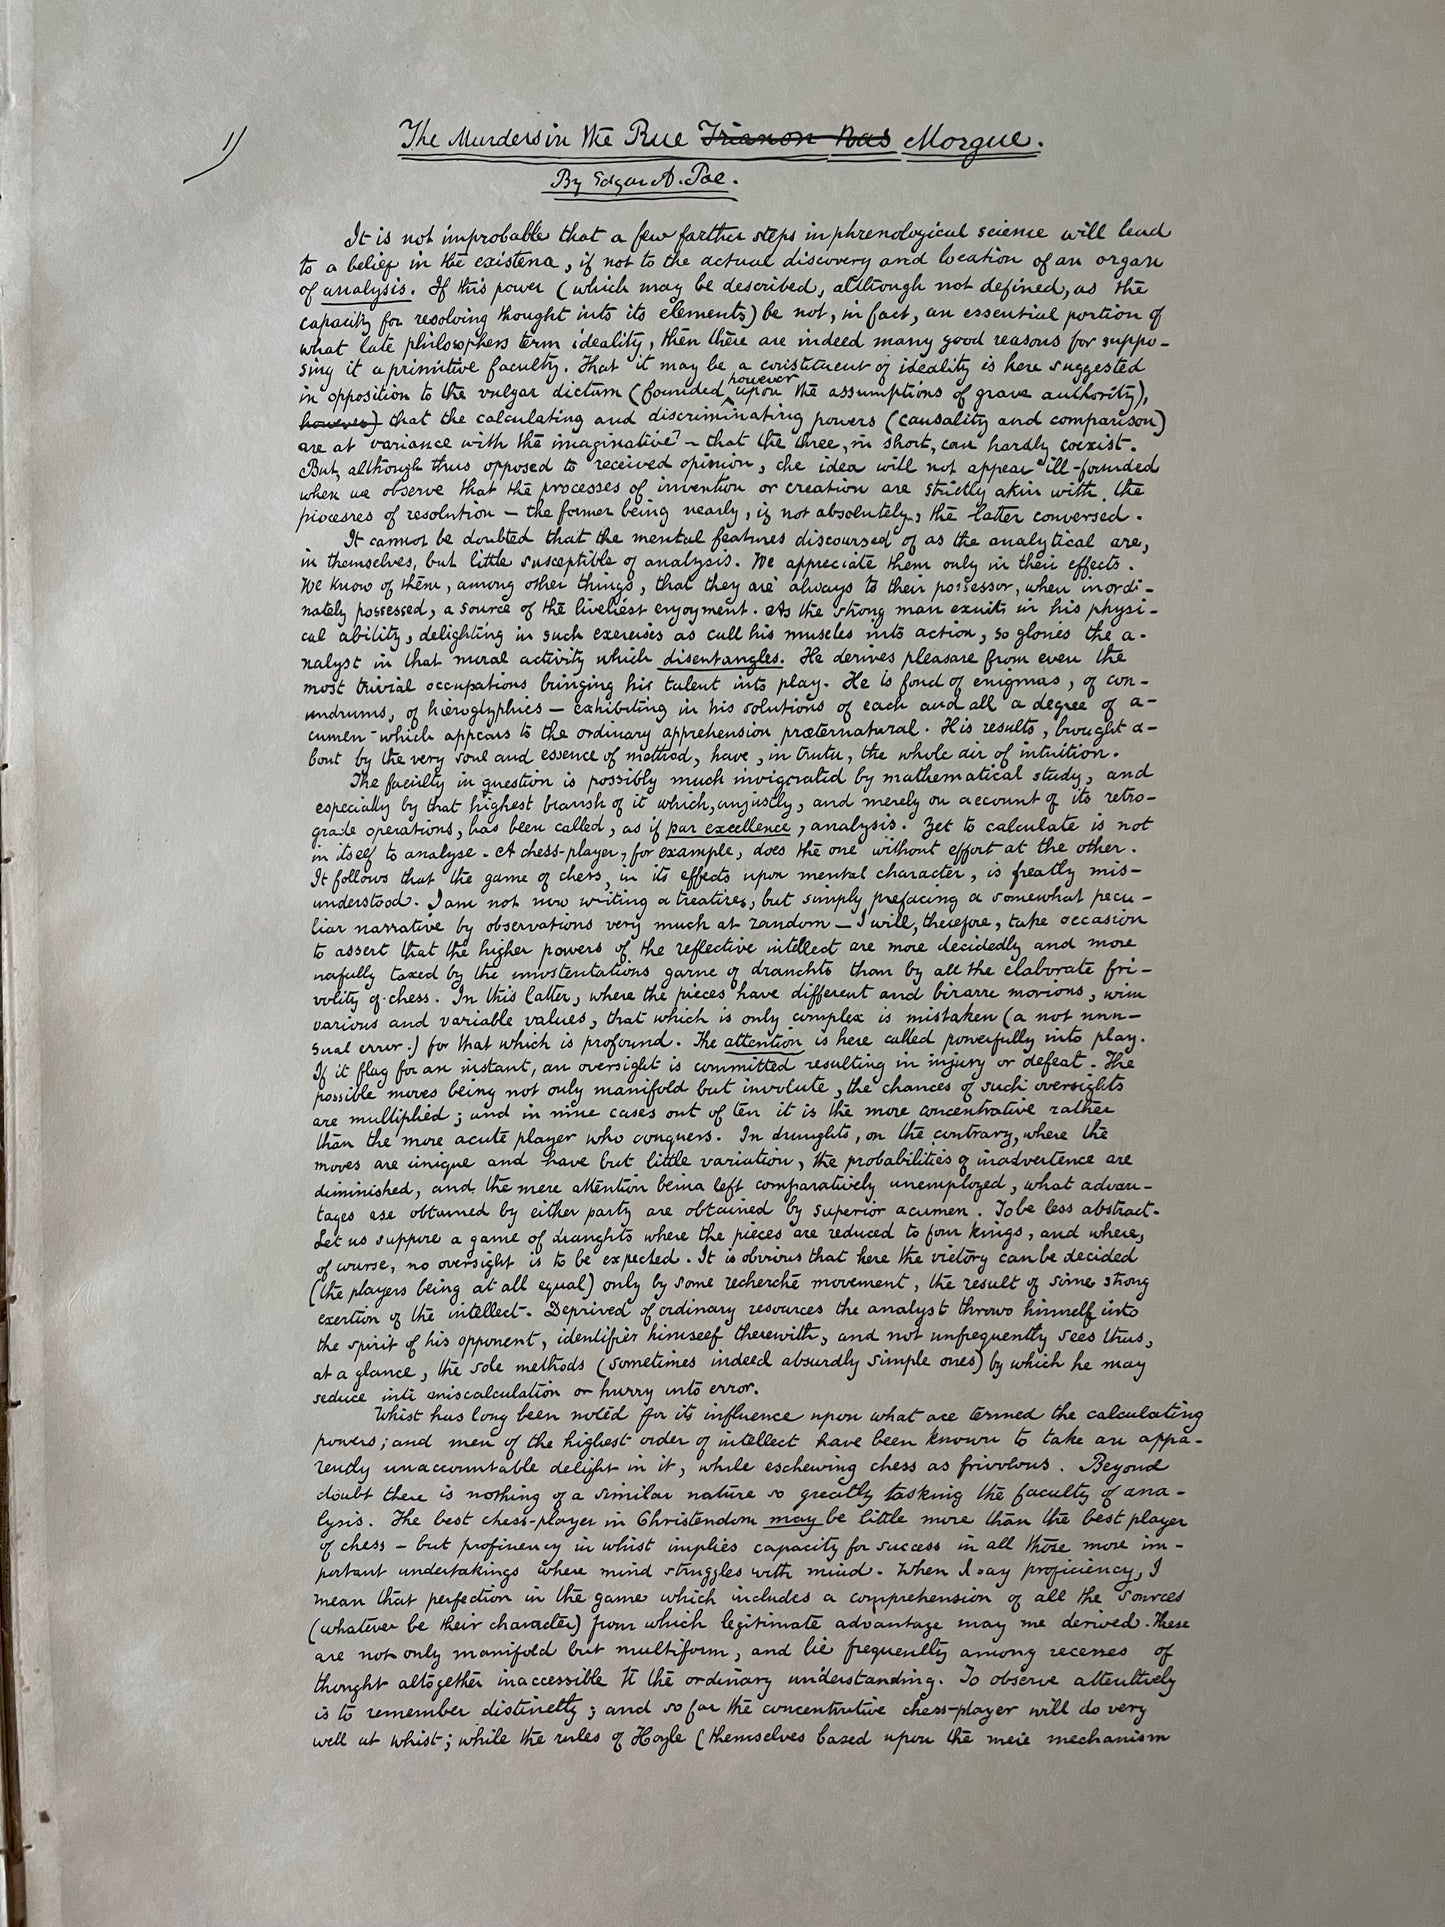 Facsimile of the MS [Manuscript] "The Murders in the Rue Morgue" / 1st Edition / 1895 - Precious Cache